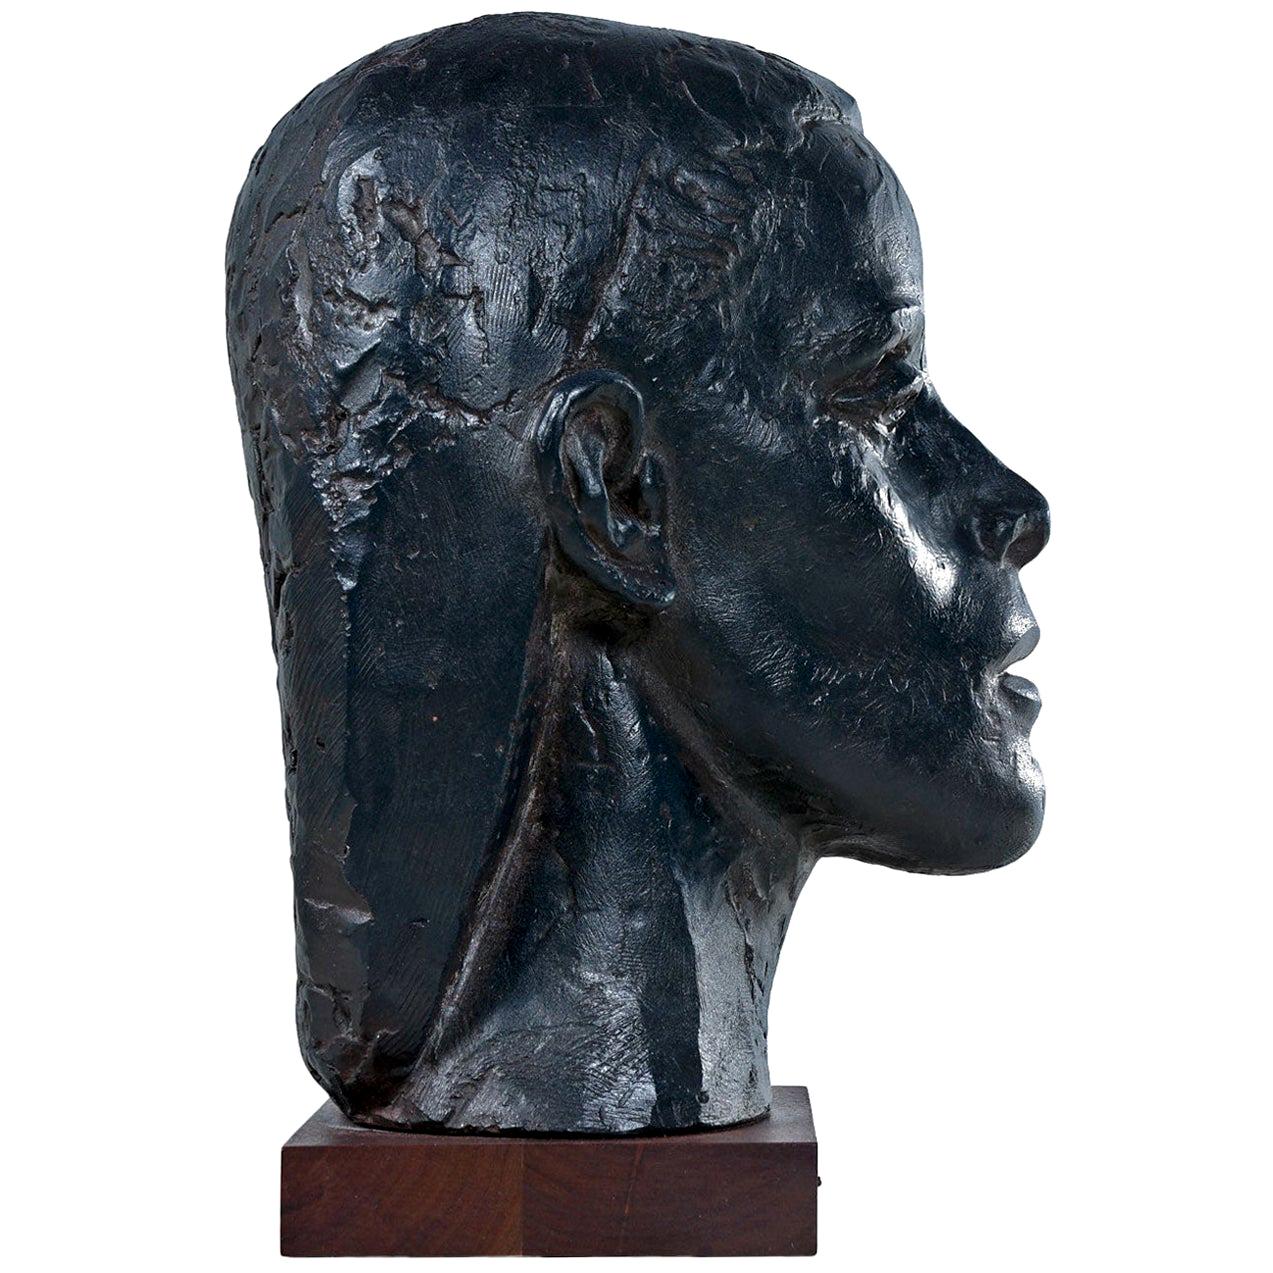 Büste von Martha Graham, geschaffen von Joseph Konzal. Sie wurde in den 1950er Jahren geschaffen und besteht aus einer bemalten Bronzepatina auf Gips, die auf einem Holzsockel montiert ist. Konzal war ein anerkannter Bildhauer, der zwischen 1930 und